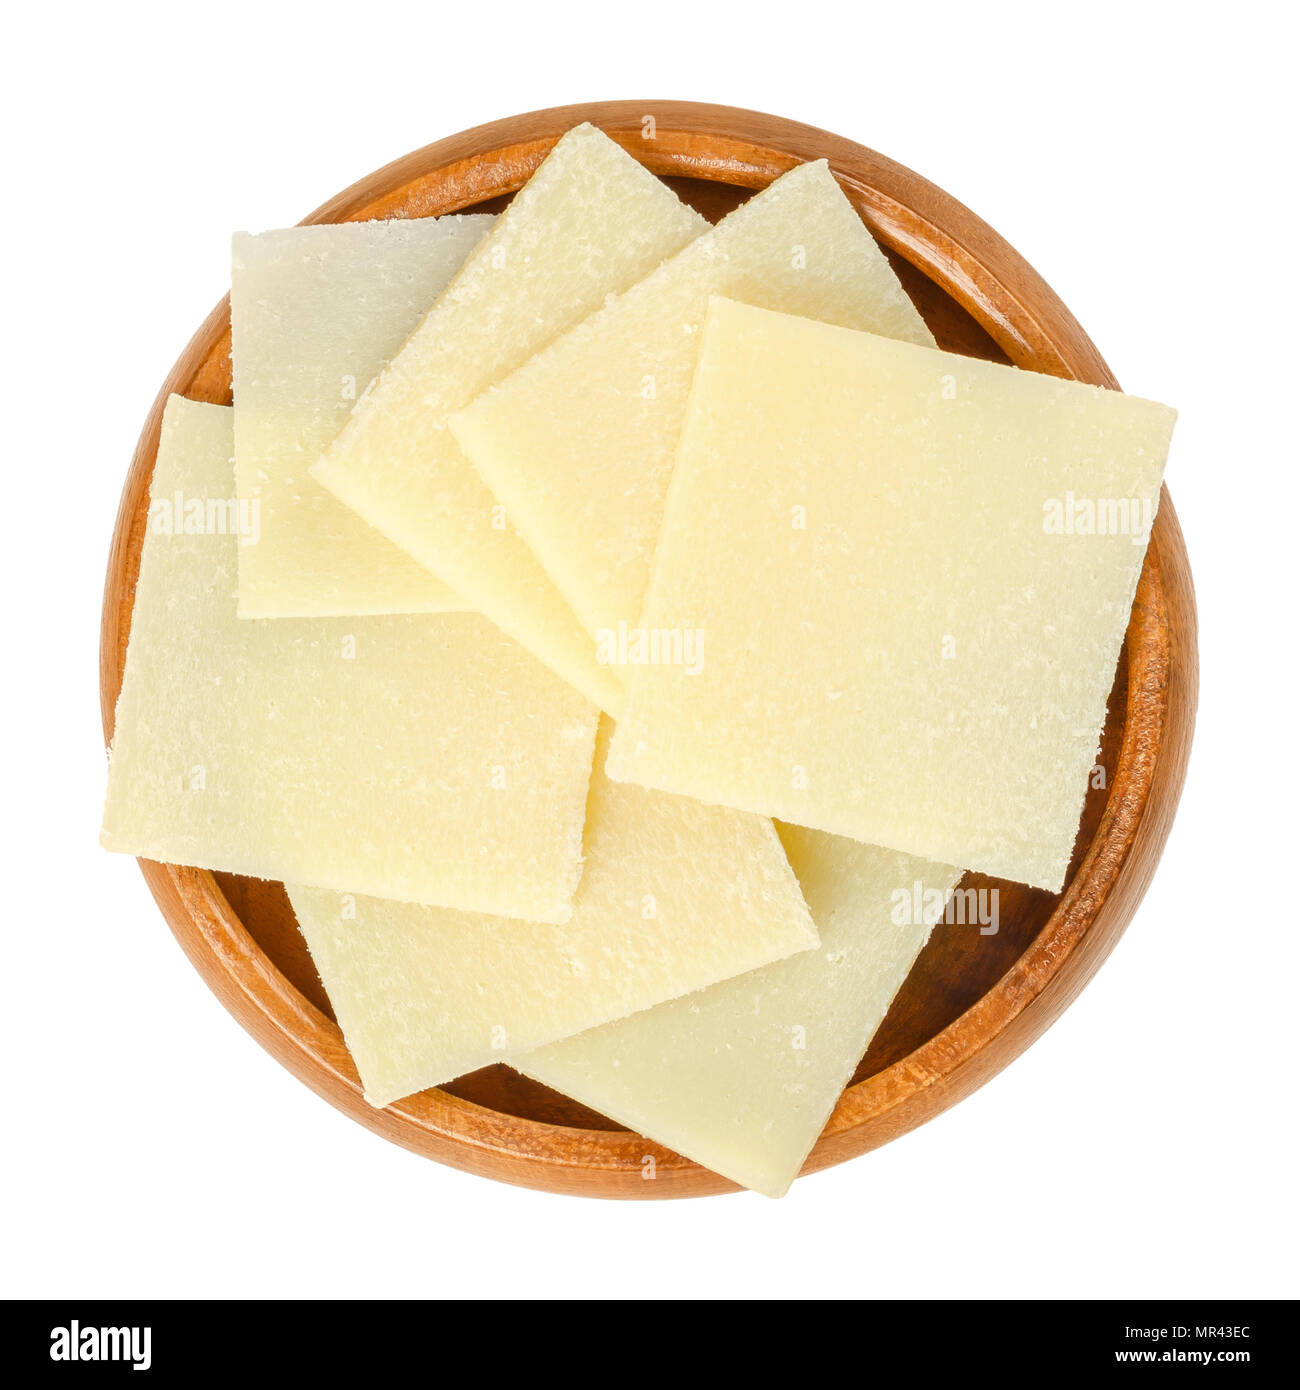 Morceaux de fromage parmesan dans bol en bois. Le Parmigiano-Reggiano. Disque dur, fromage italien granulaire, de couleur légèrement jaune, fait de lait de vache non pasteurisé. Banque D'Images